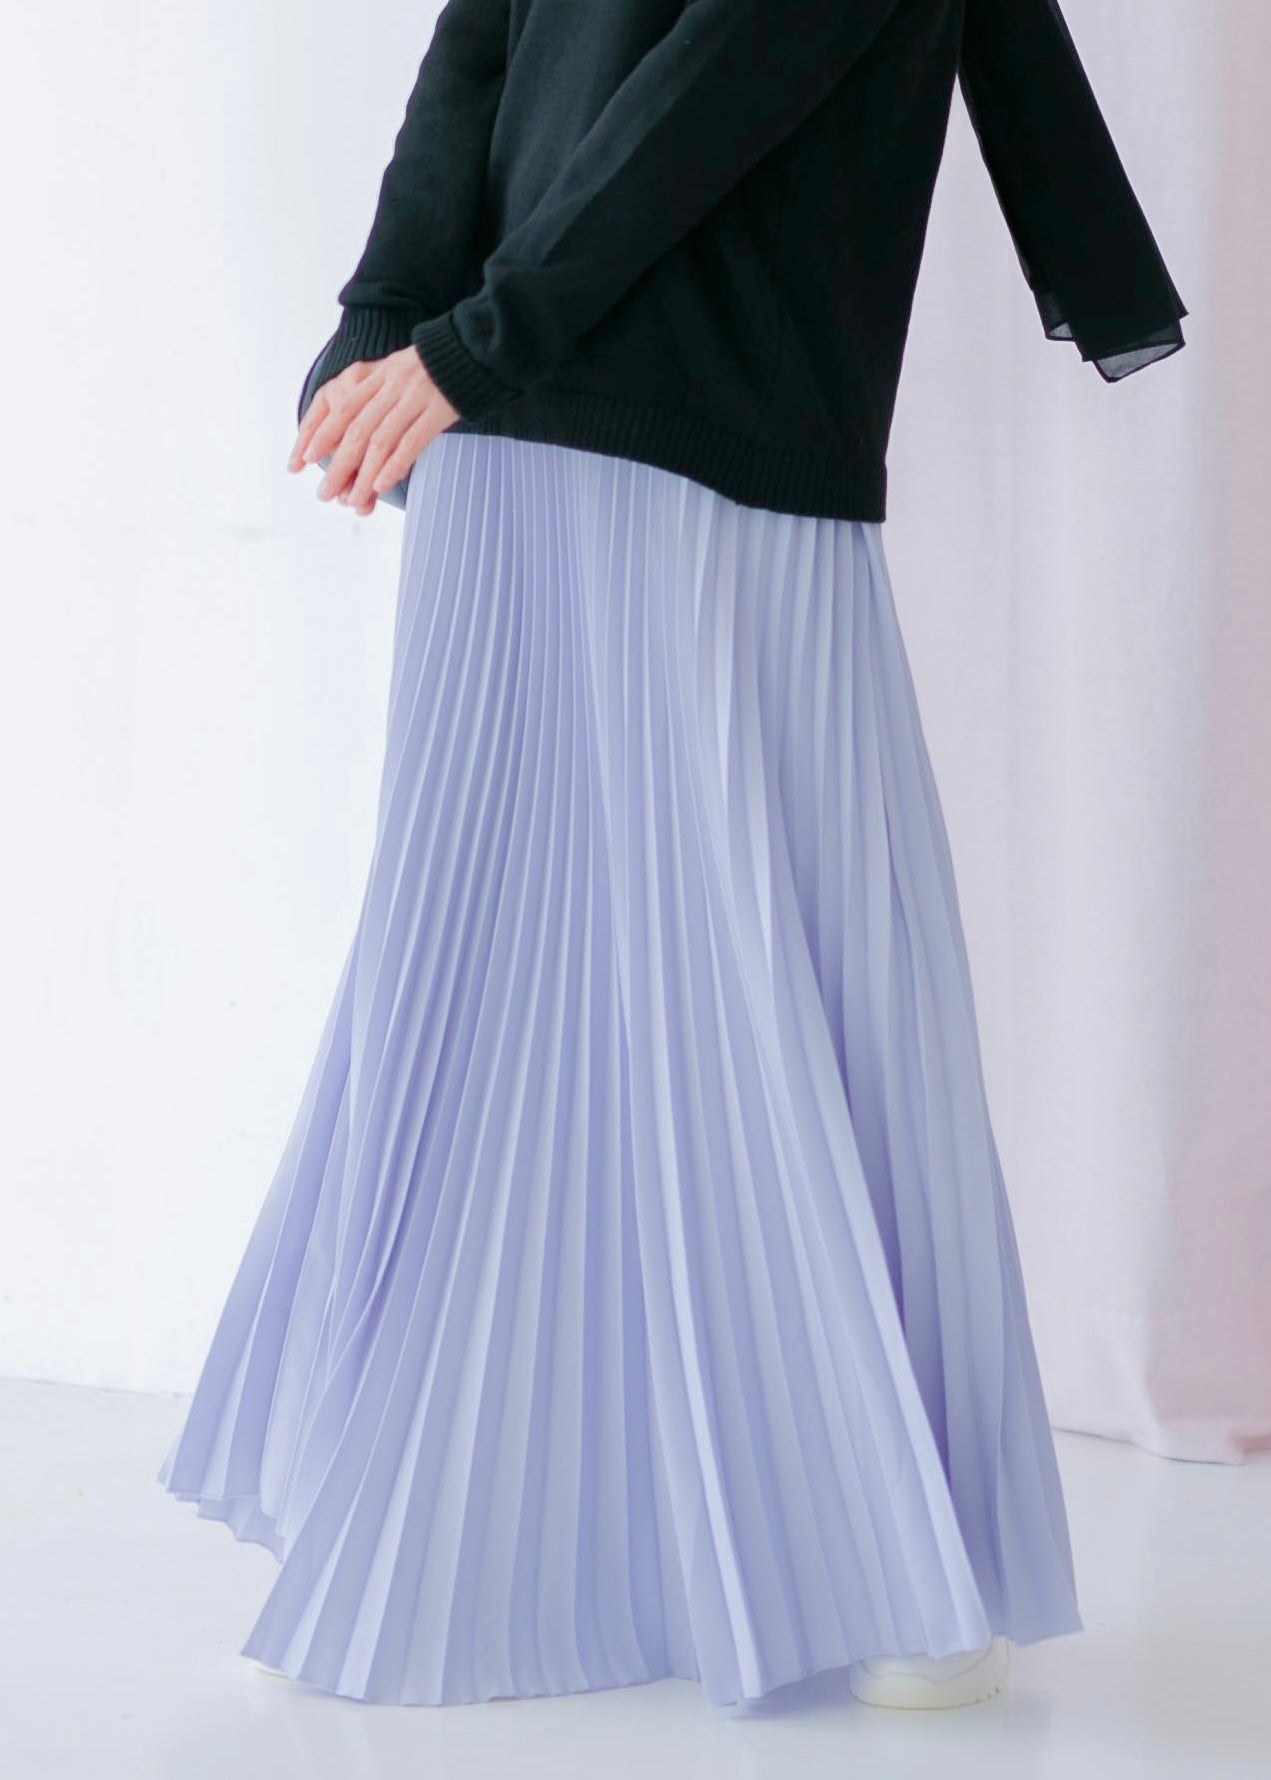 Harper Skirt in Dusty Lilac